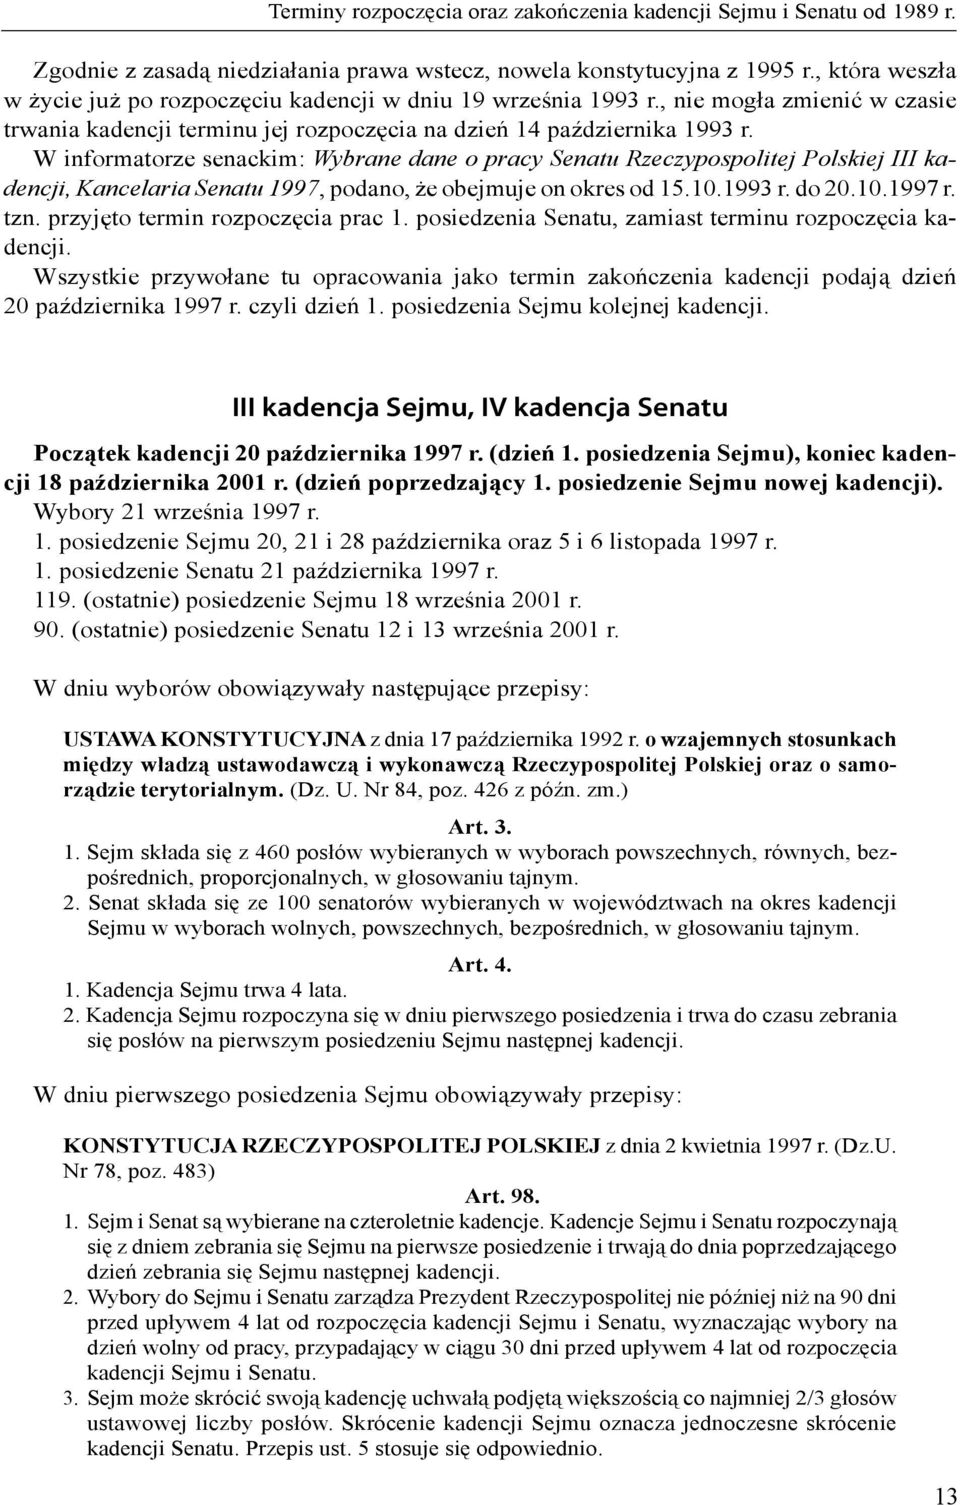 W informatorze senackim: Wybrane dane o pracy Senatu Rzeczypospolitej Polskiej III kadencji, Kancelaria Senatu 1997, podano, że obejmuje on okres od 15.10.1993 r. do 20.10.1997 r. tzn.